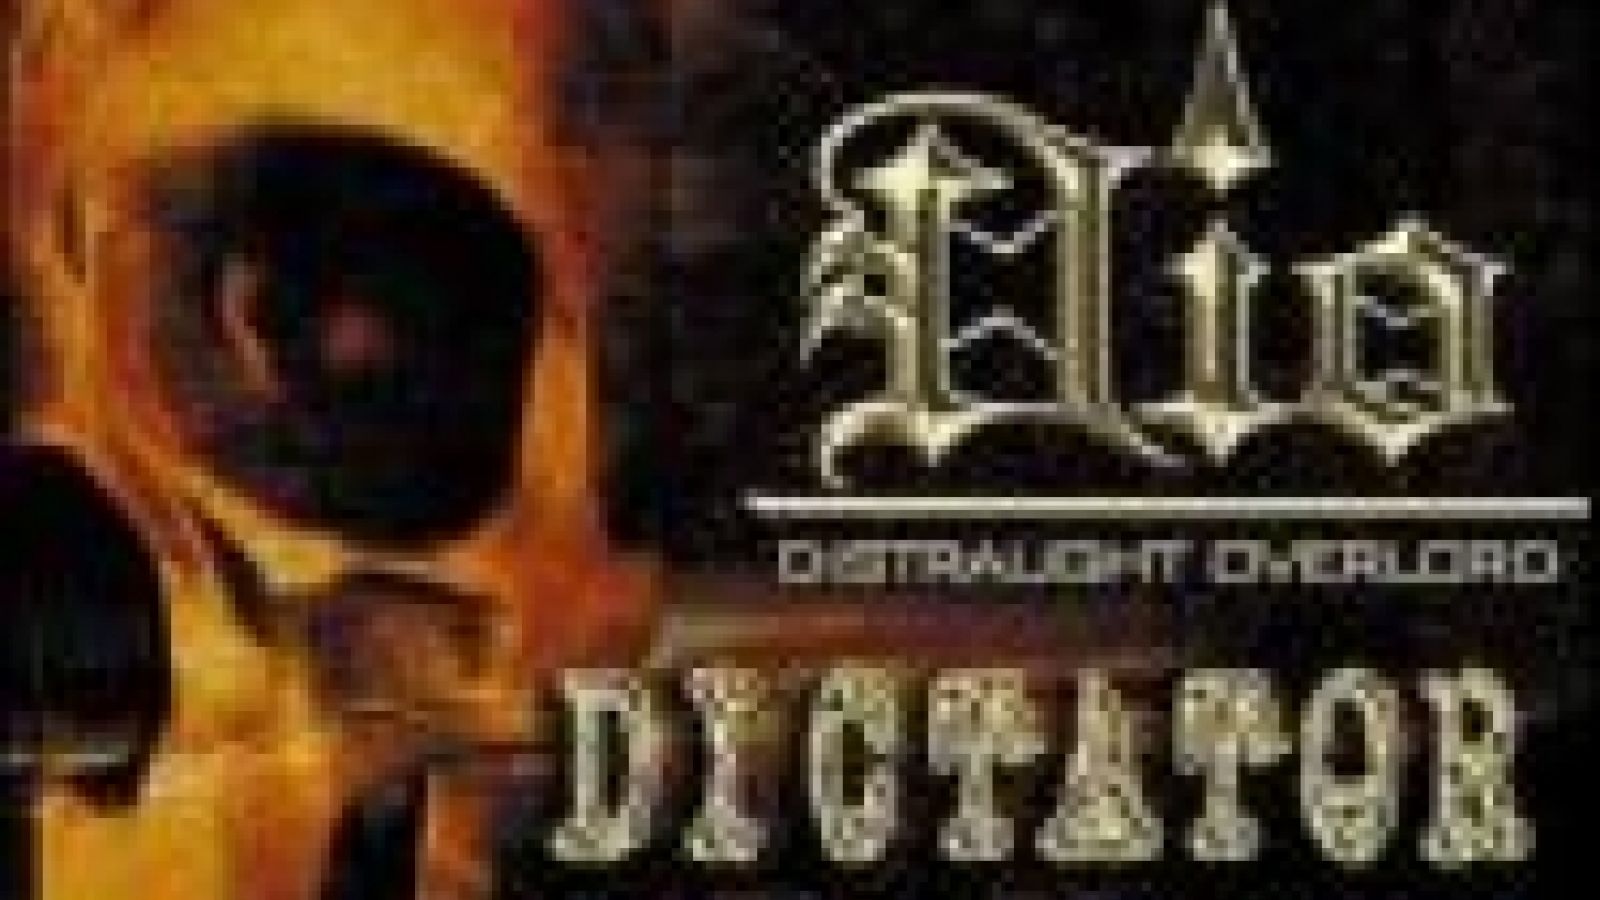 Dio - distraught overlordin albumi myöhästyy © JaME